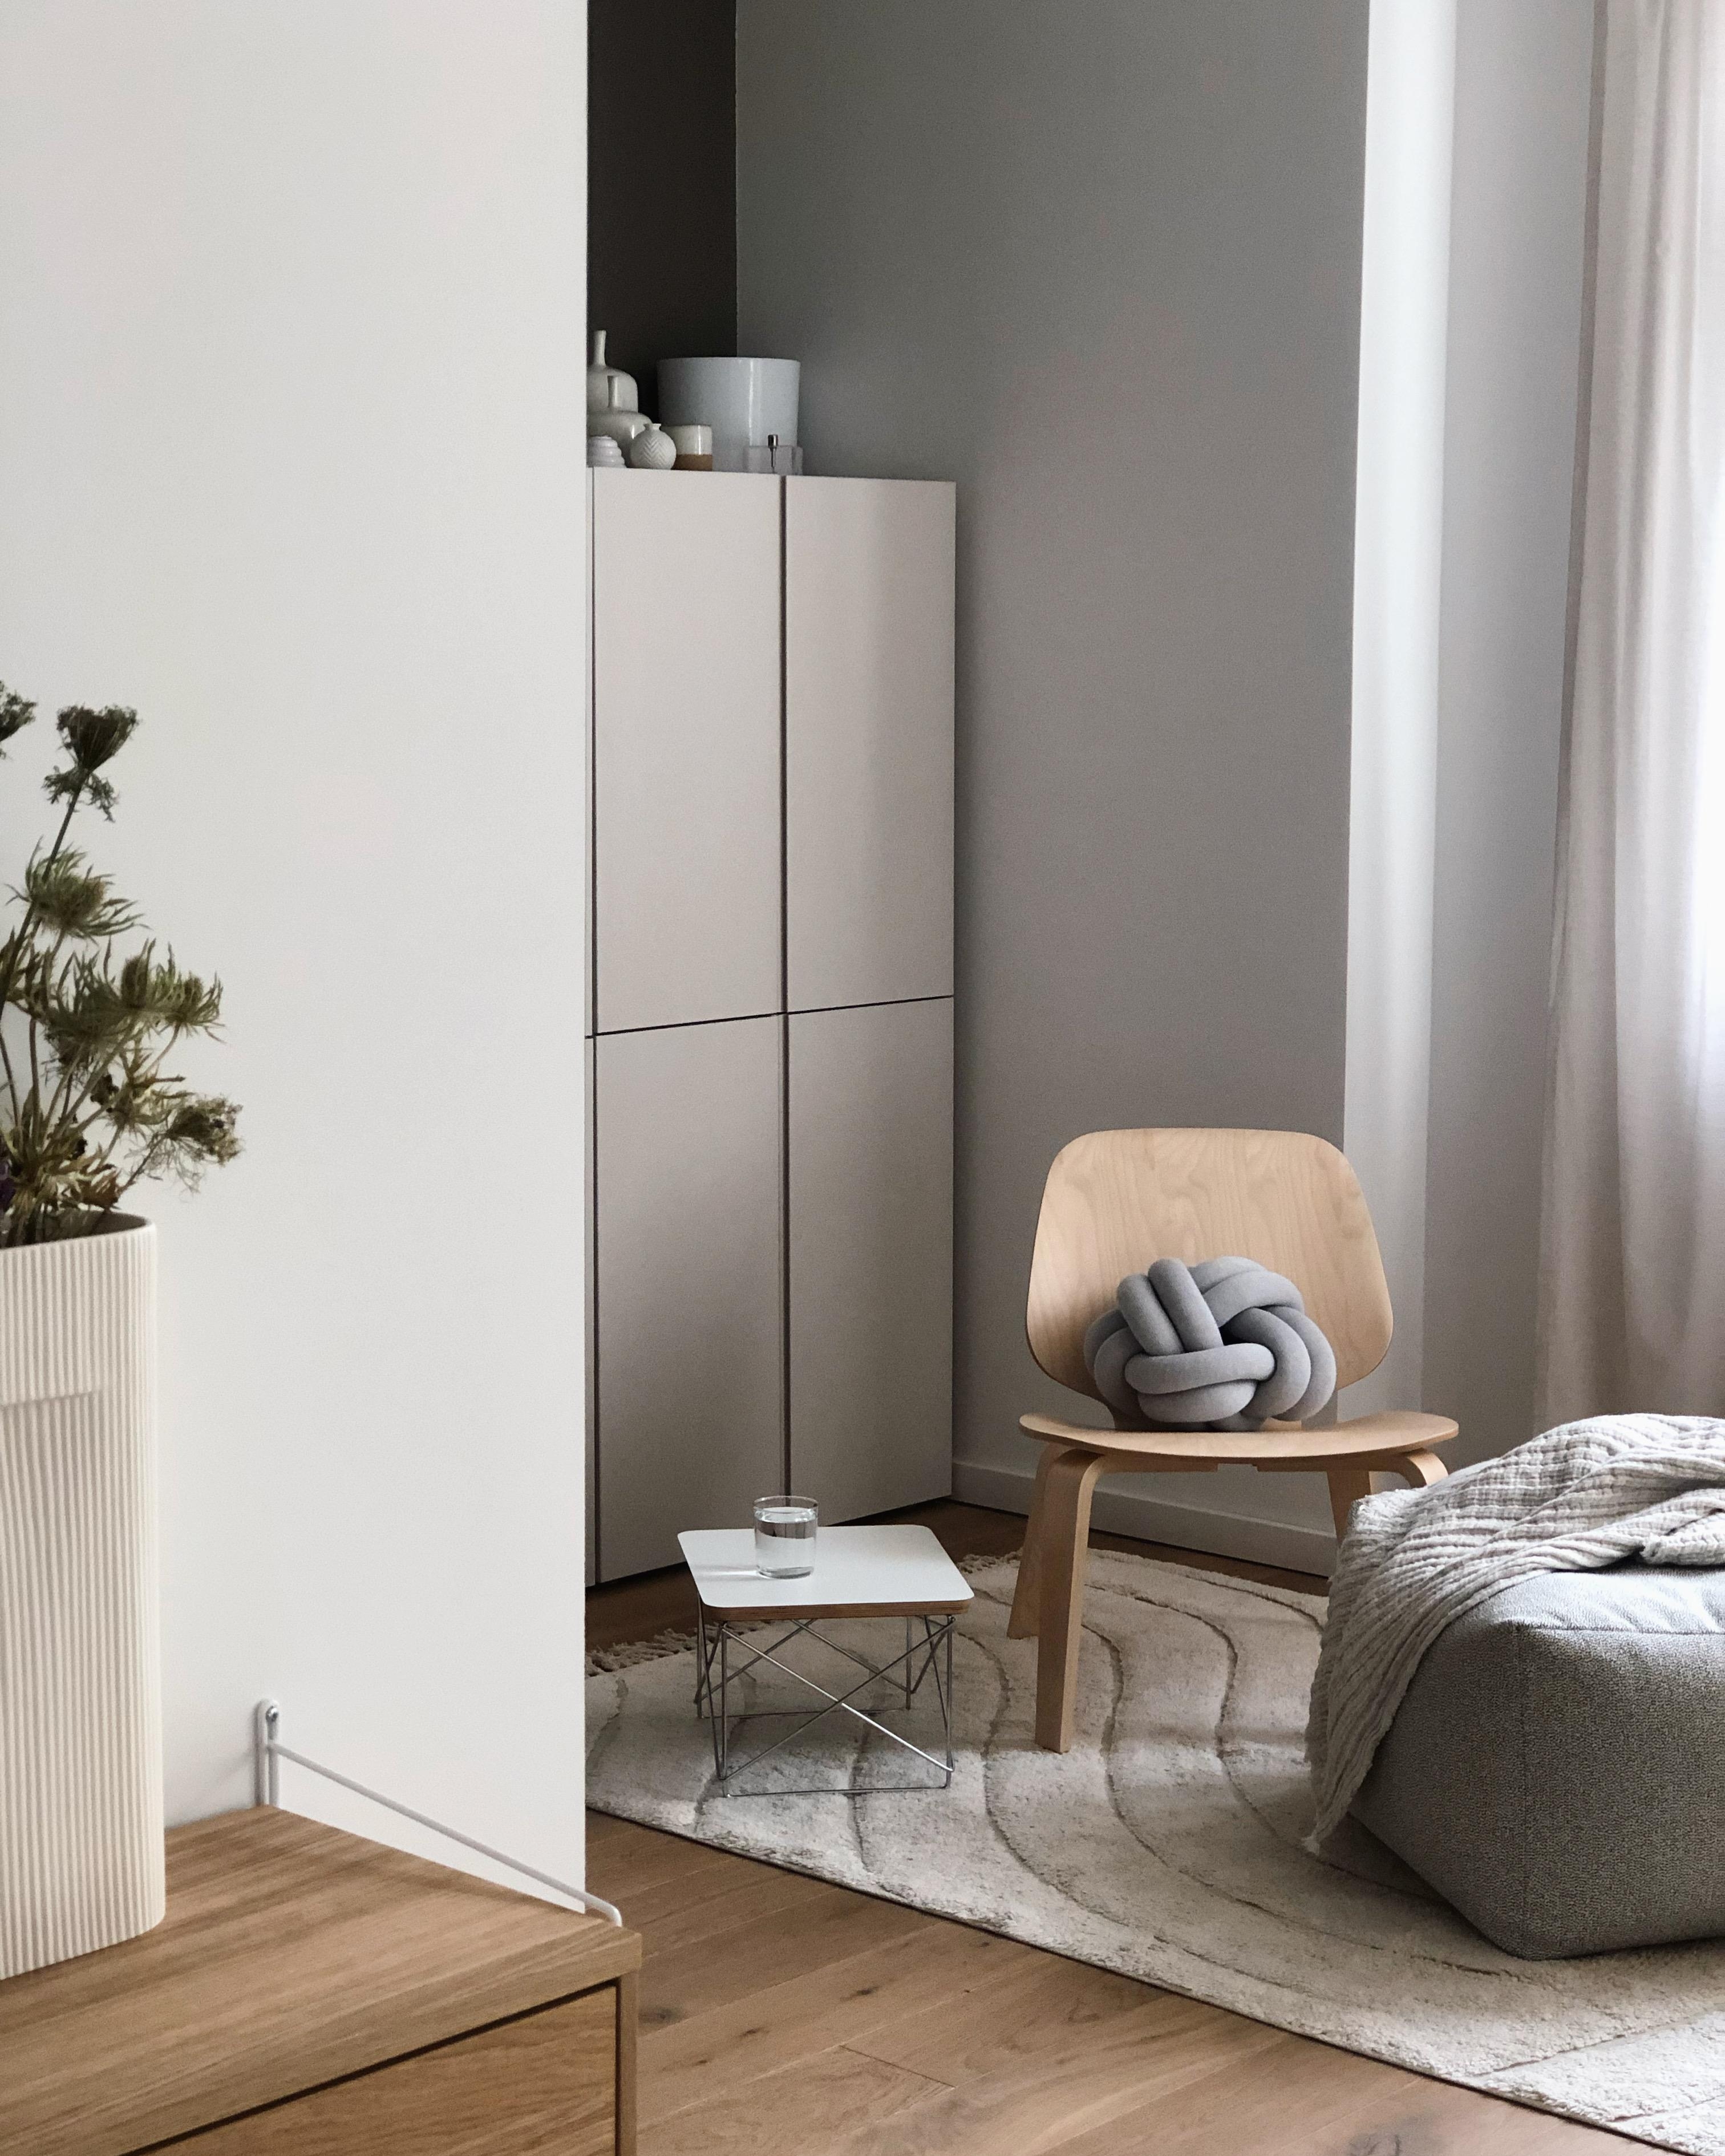 #wohnzimmer #livingroom #homeoffice #cozy #sitzecke #ivar #lesecke #interior #minimalism #beige #couchstyle #hygge